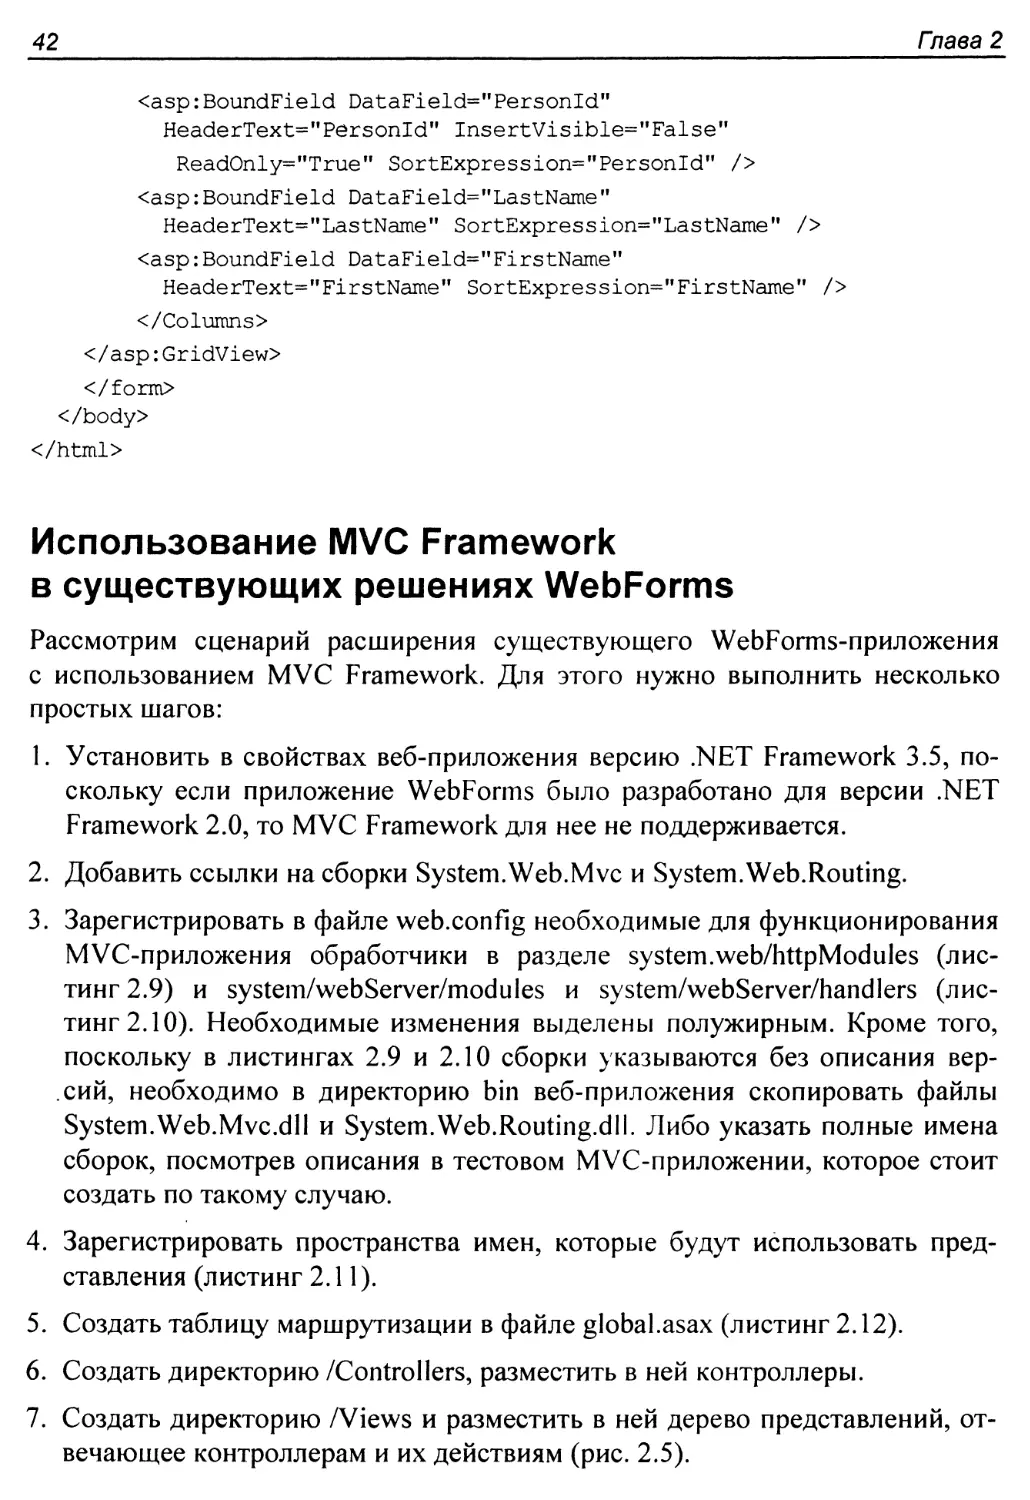 Использование MVC Framework в существующих решениях WebForms